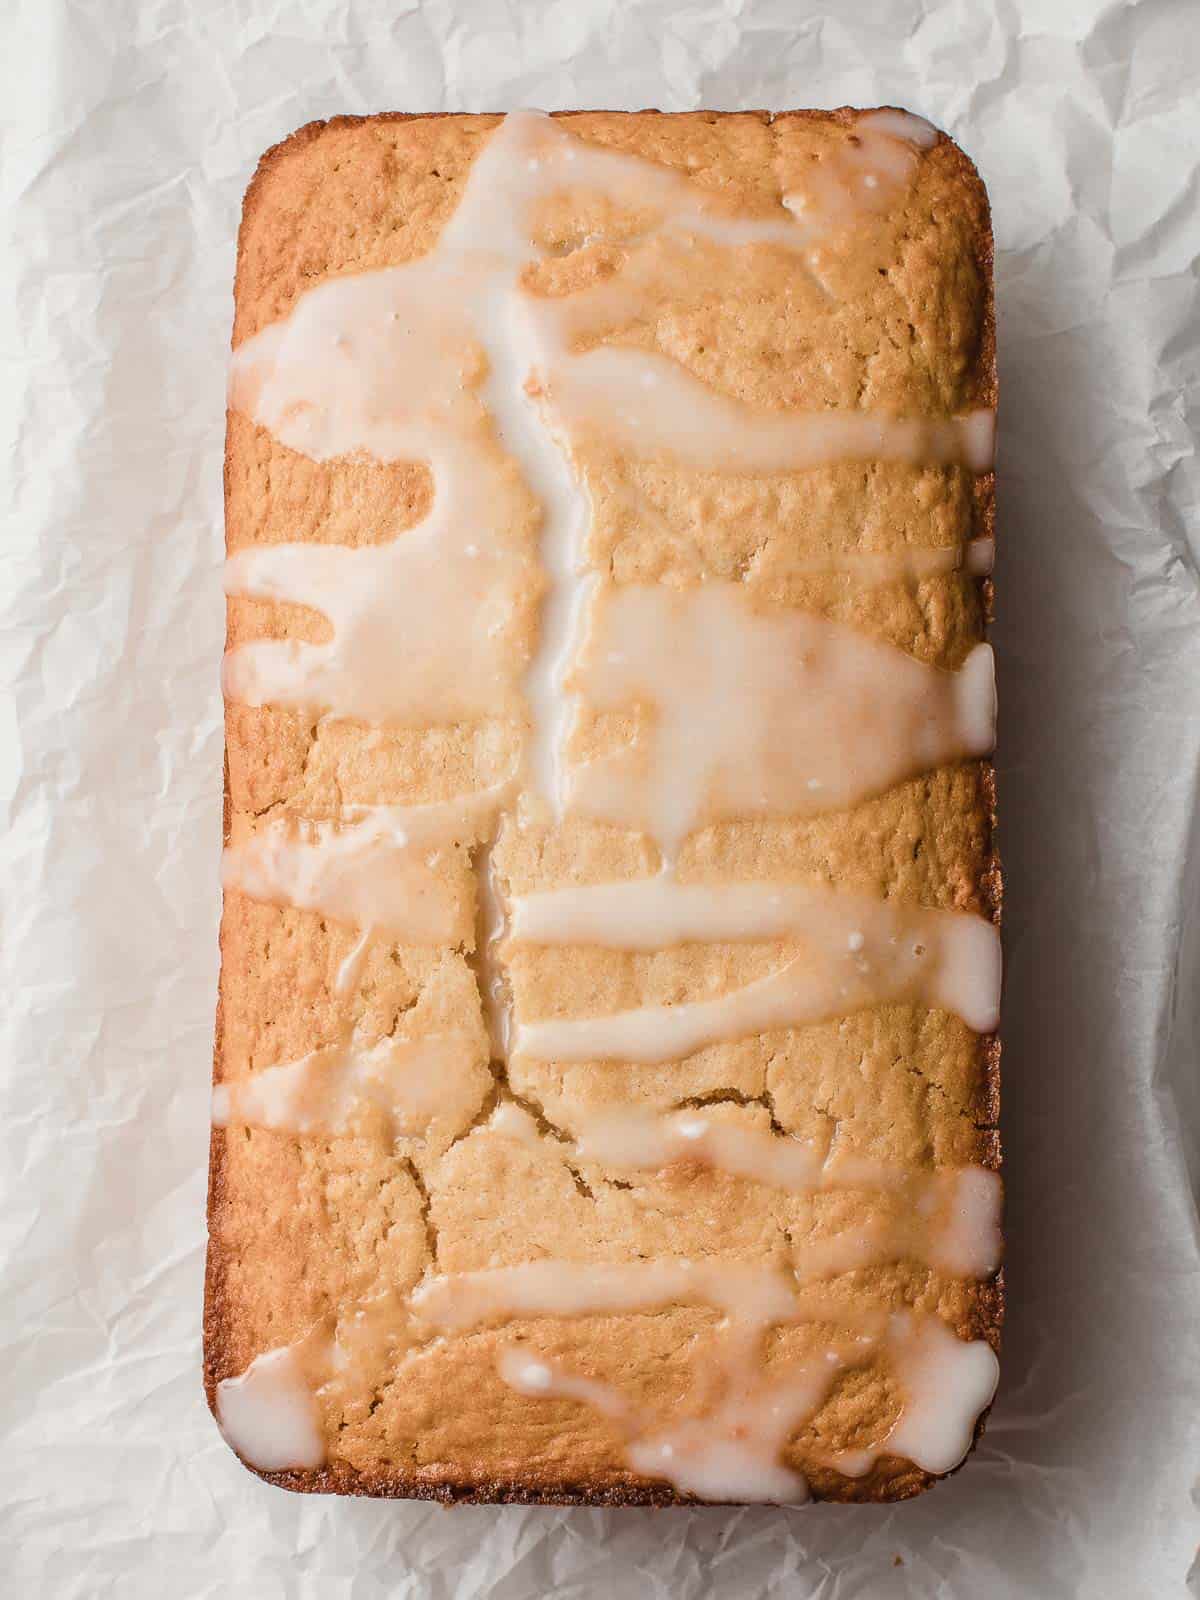 Sourdough lemon cake with lemon glaze on a sheet of parchment paper.